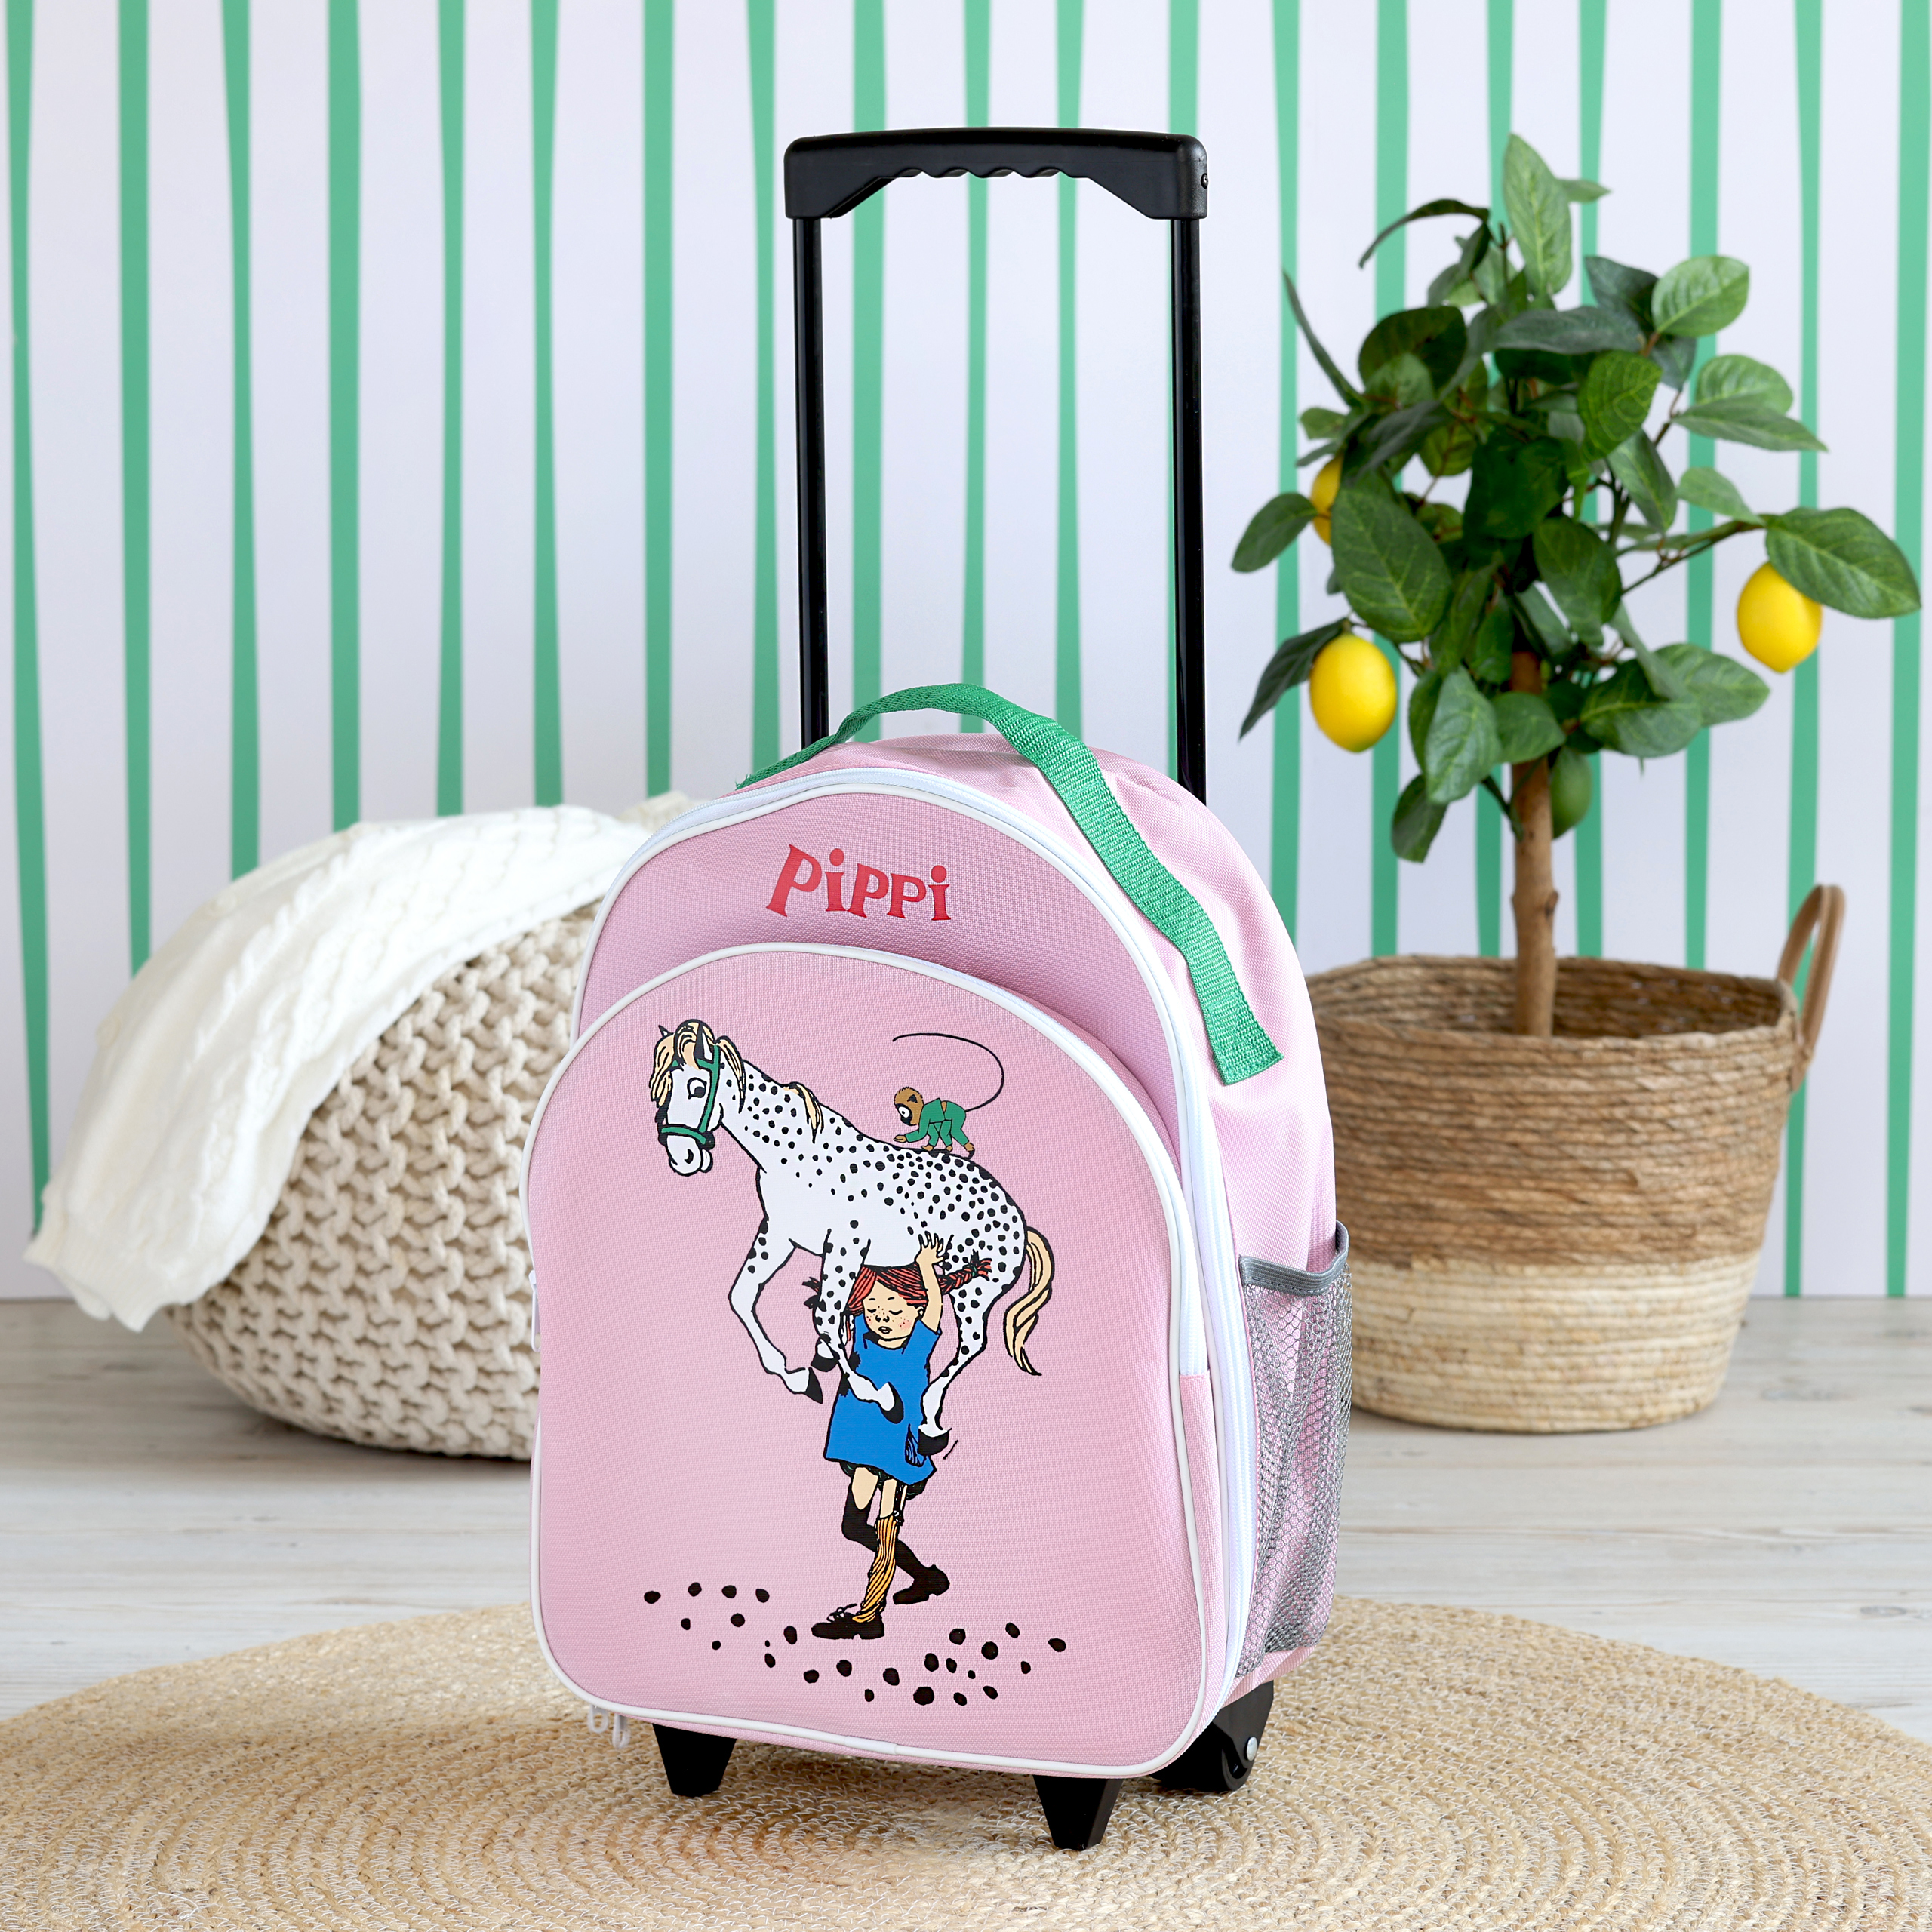 Pippi pippi børnetaske kuffert lyserød